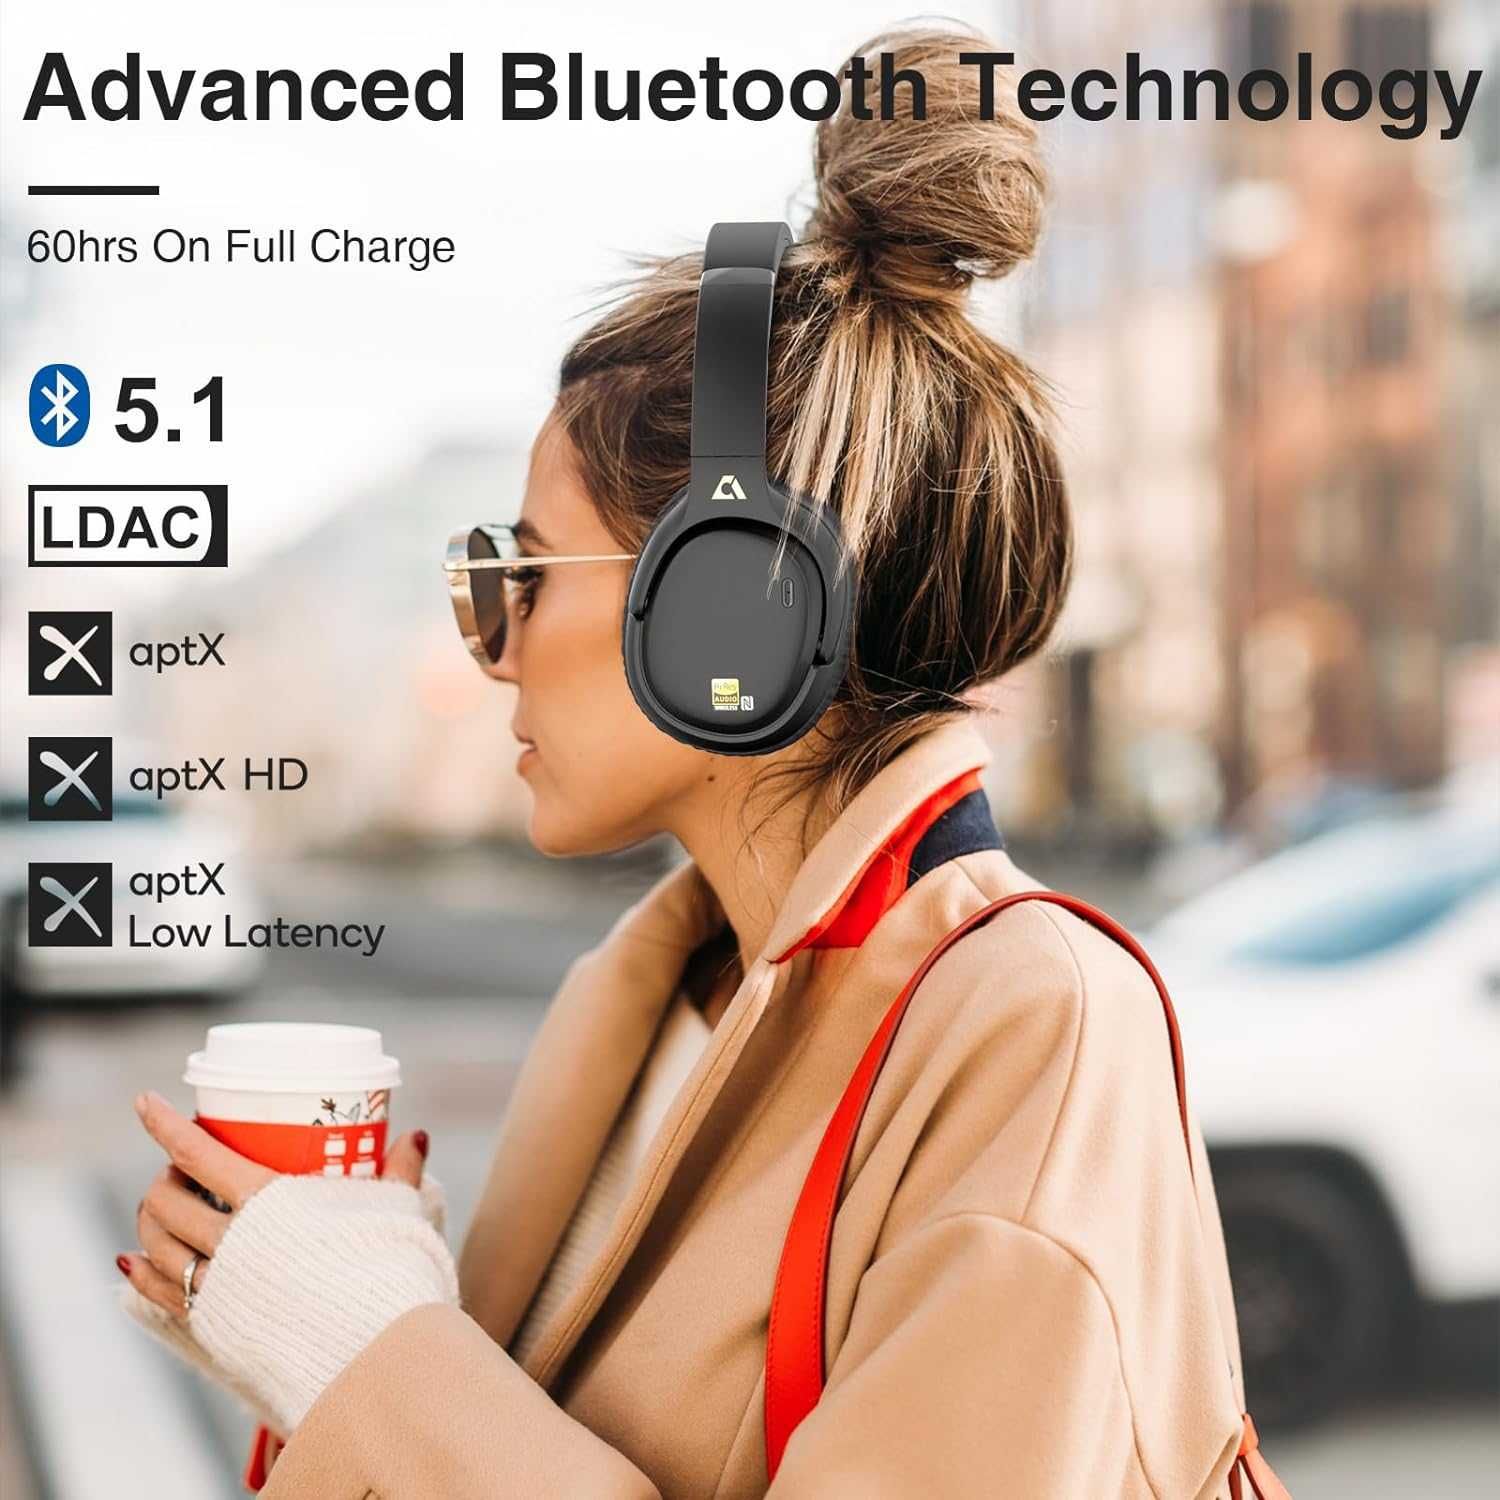 Ankbit E700 Слушалки с LDAC, Bluetooth слушалки с aptX HD (черни)